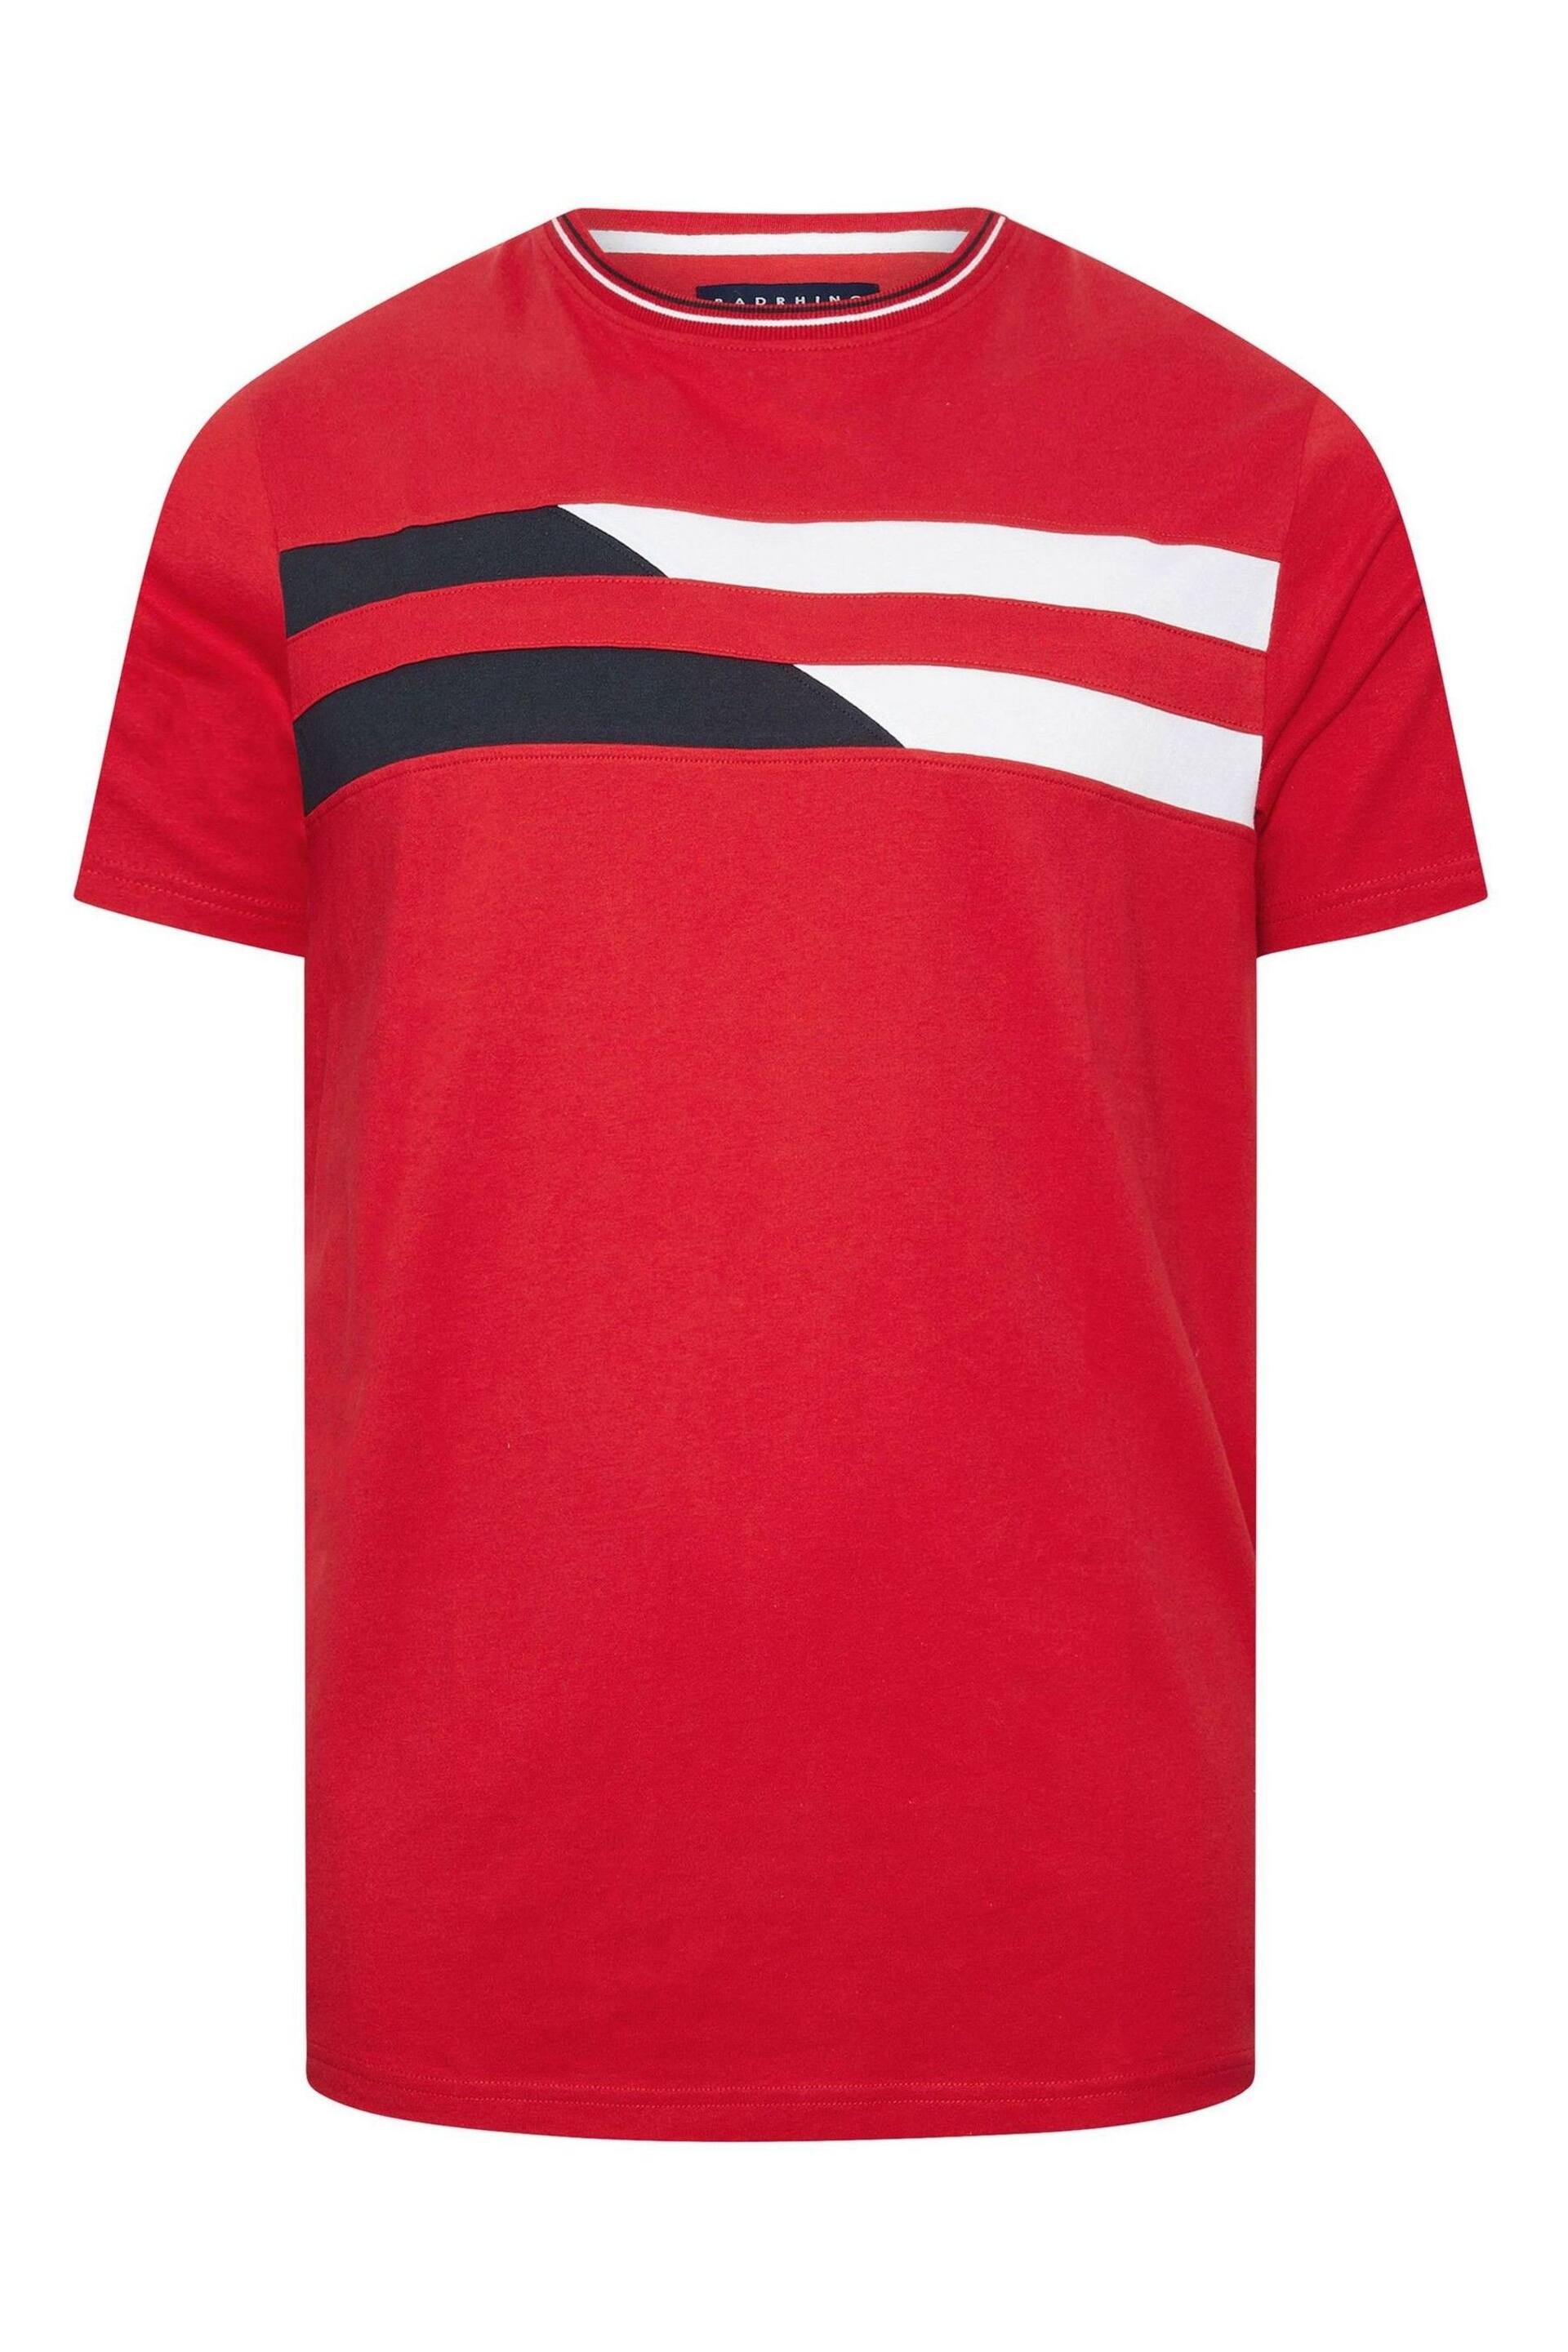 BadRhino Big & Tall Dark Red Chest Stripe T-Shirt - Image 2 of 3